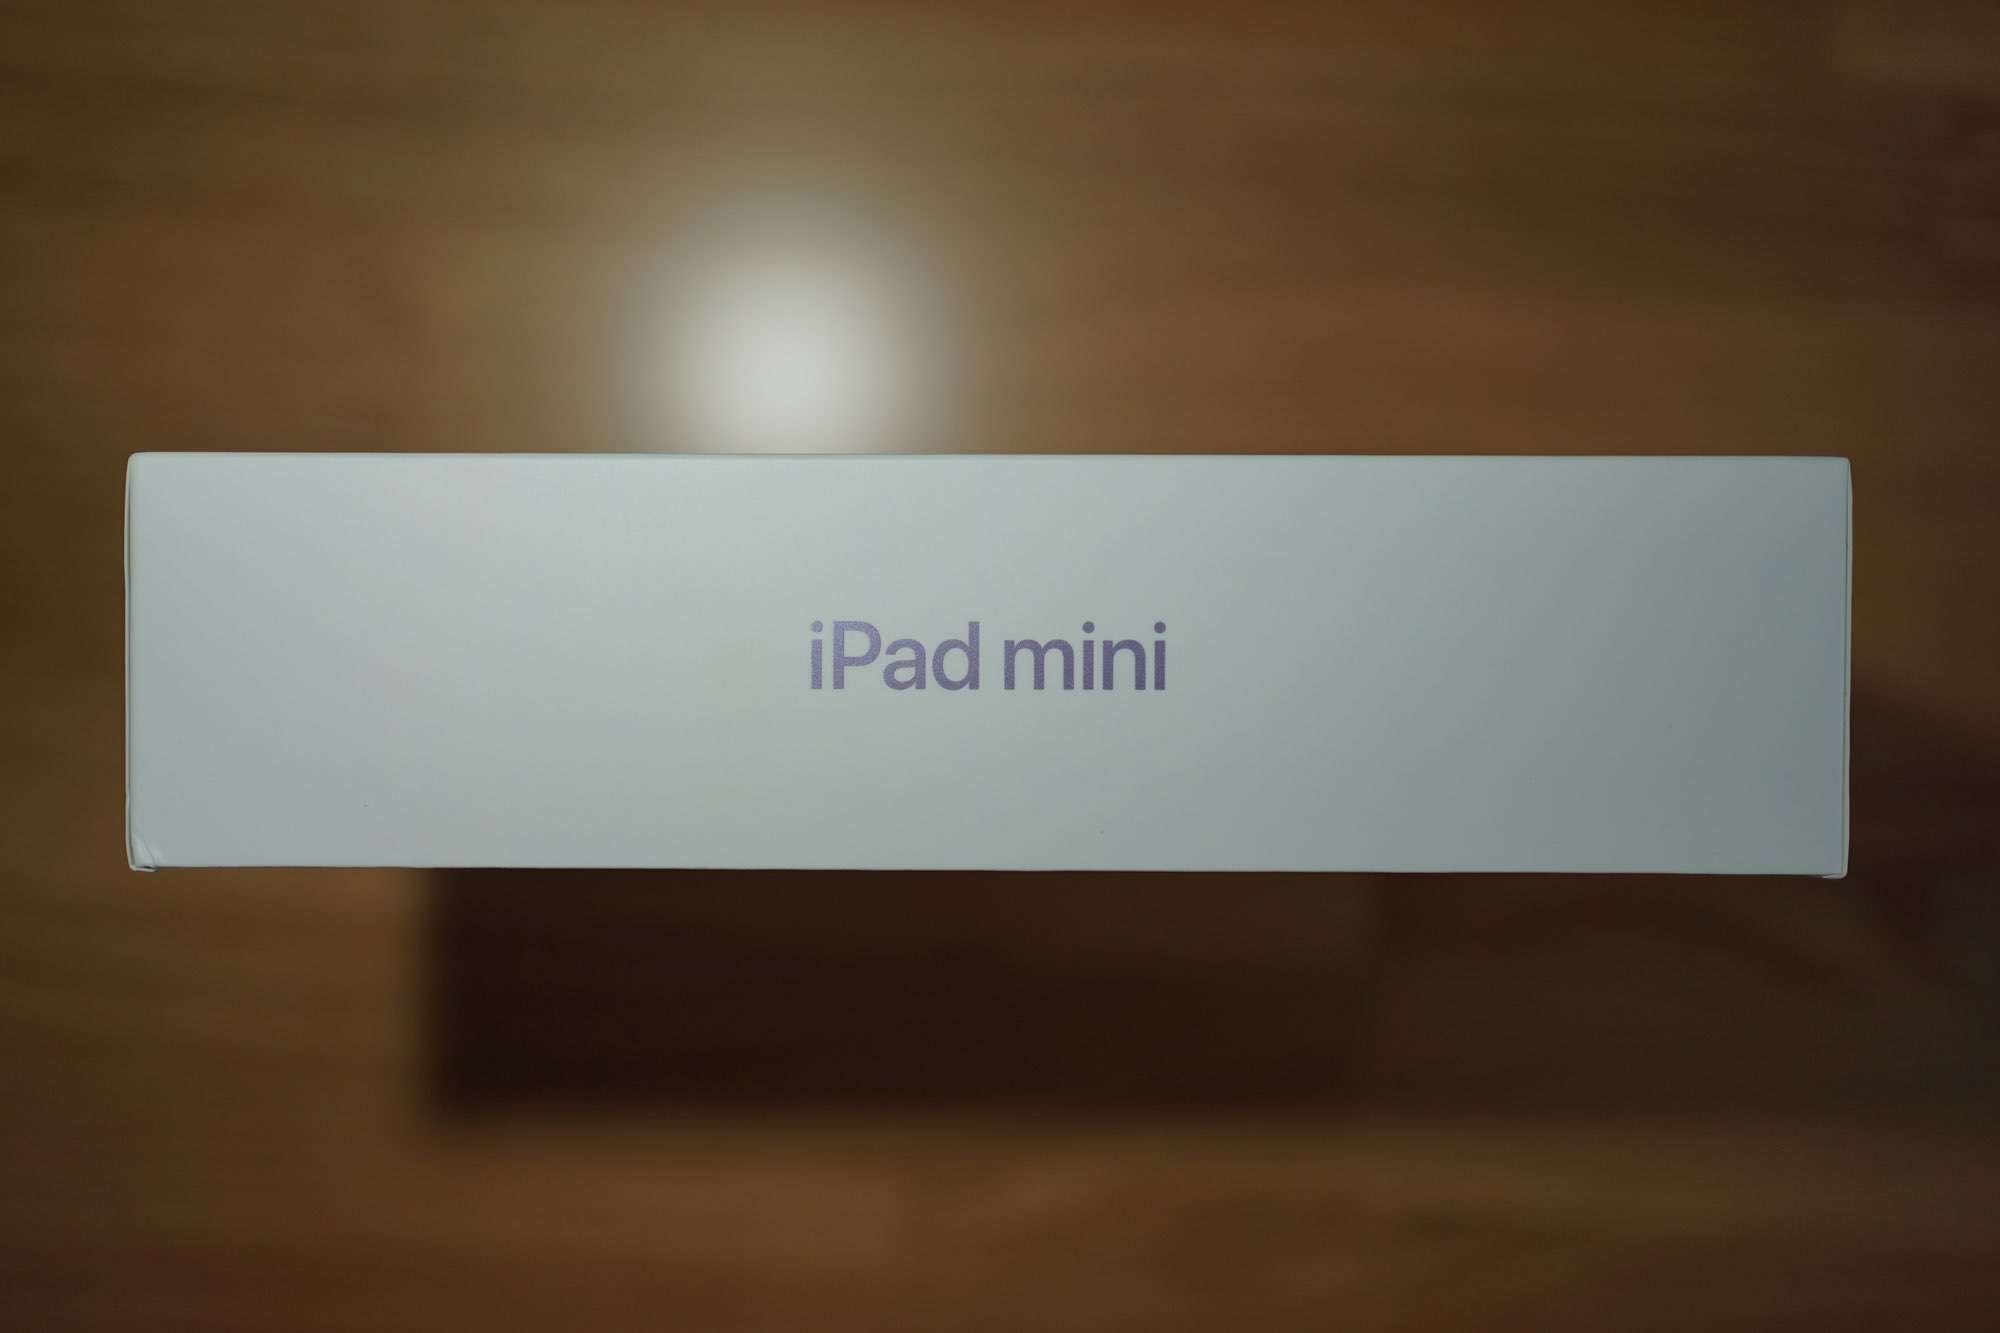 รีวิว iPad Mini Gen 6 เห้ย ดีกว่าที่คิด รักเลอ